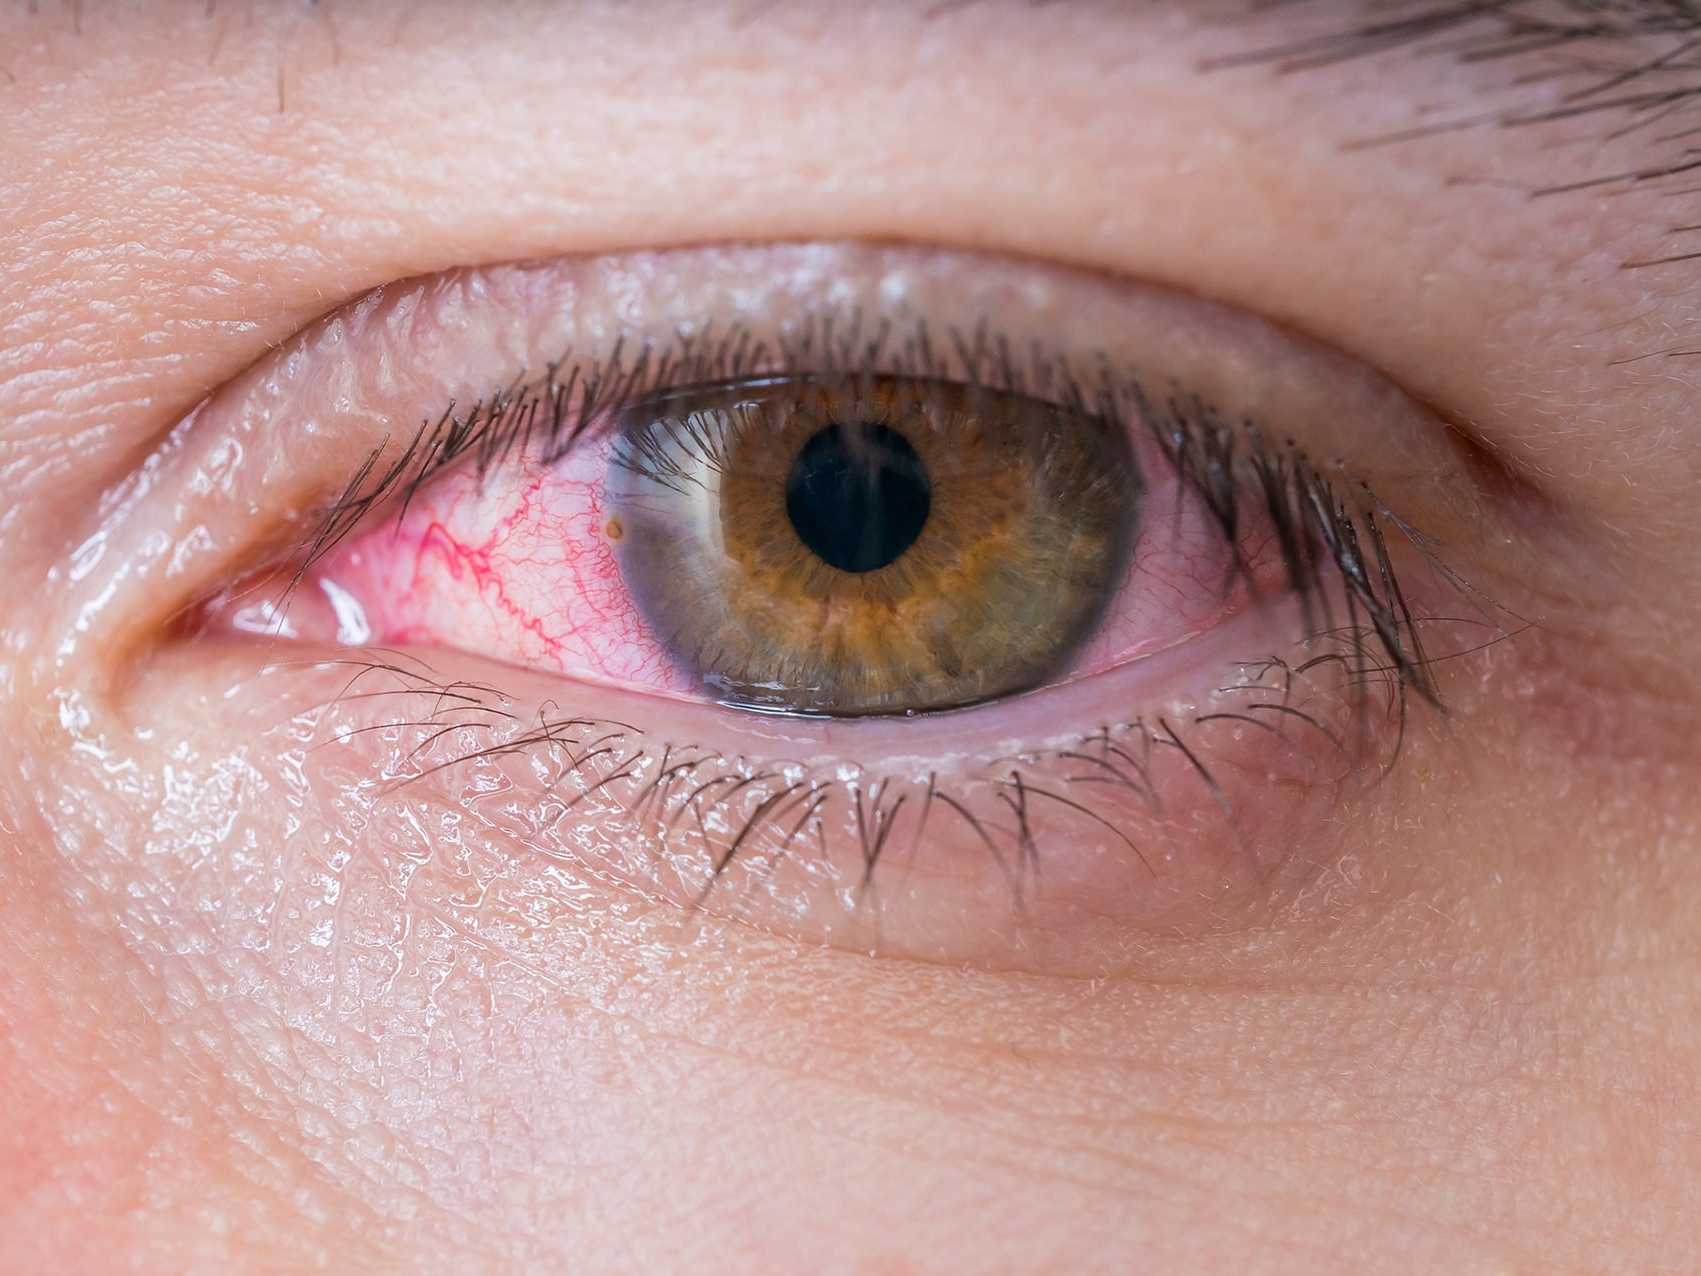 잠재적인 눈 건강 문제를 보여주는 건강하지 못한 눈의 클로즈업 이미지. 